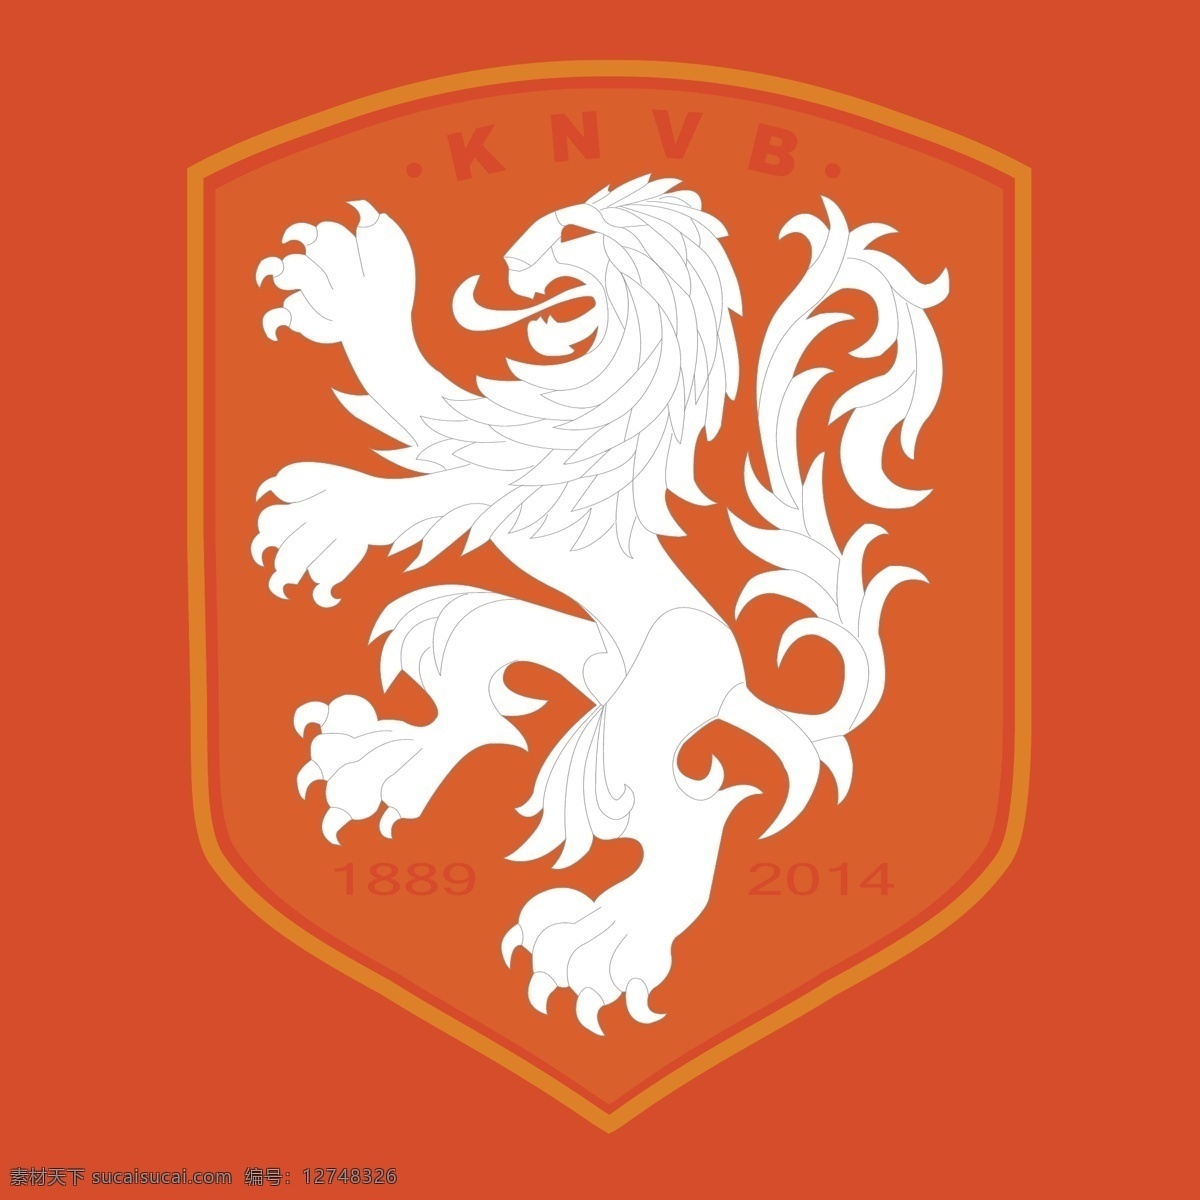 荷兰队新标志 荷兰队标志 荷兰 国家队 运动 欧洲 橙衣军团 无冕之王 罗本 范佩西 足球标志 logo设计